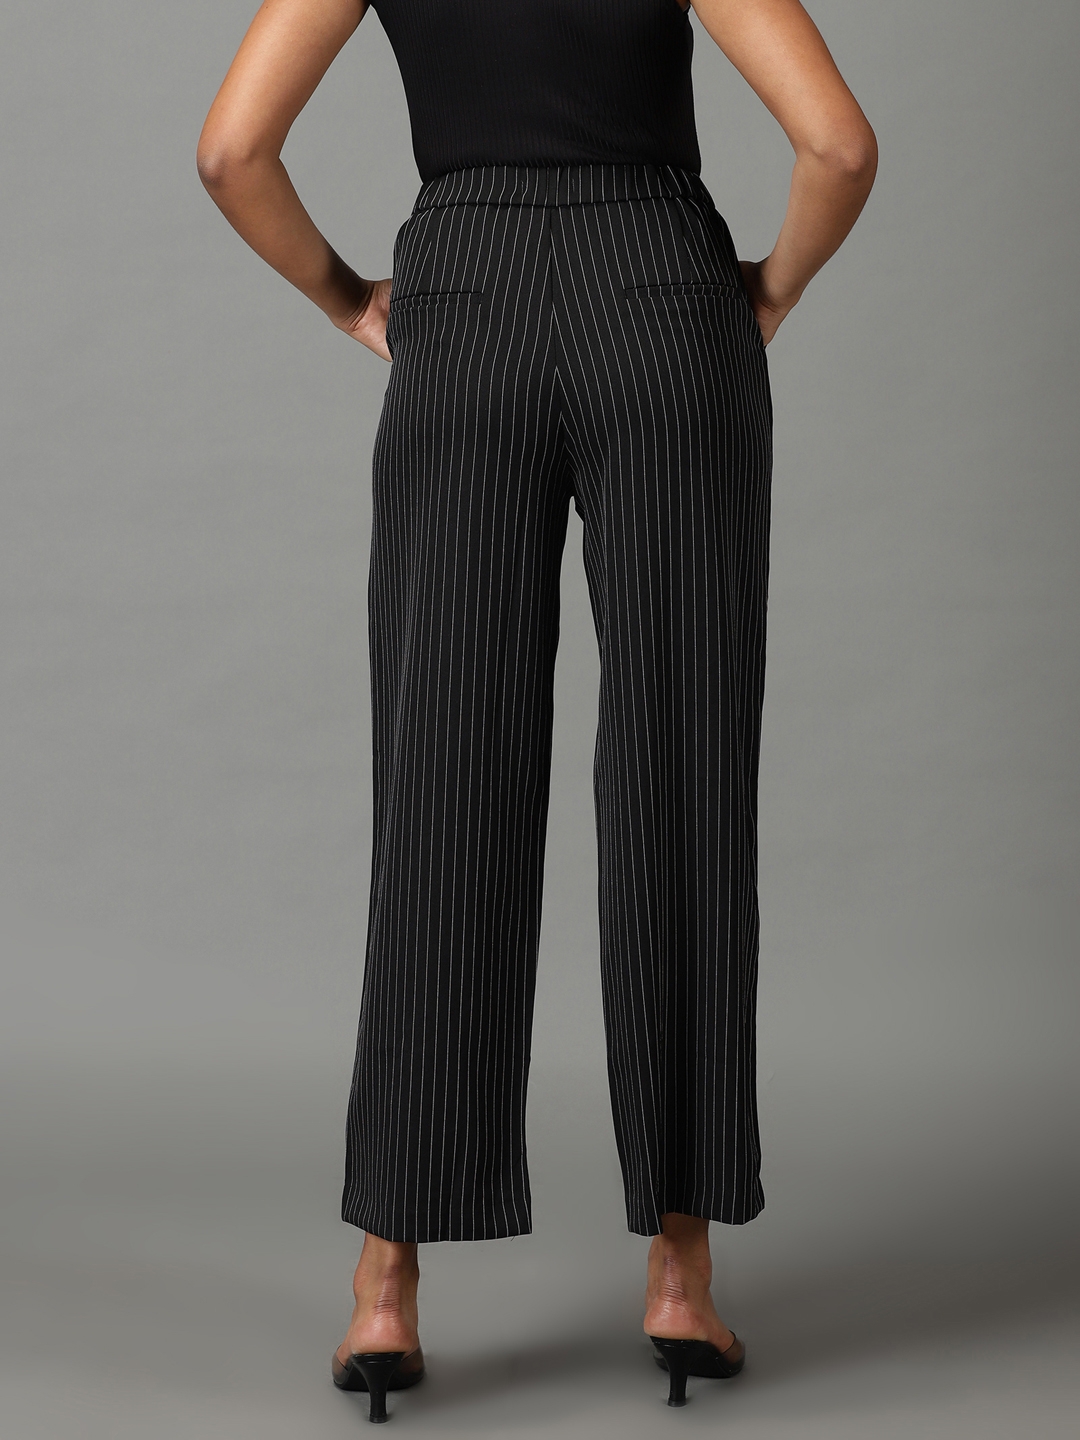 Buy HIGHLANDER Black Striped Slim Fit Regular Trousers for Men Online at  Rs614  Ketch